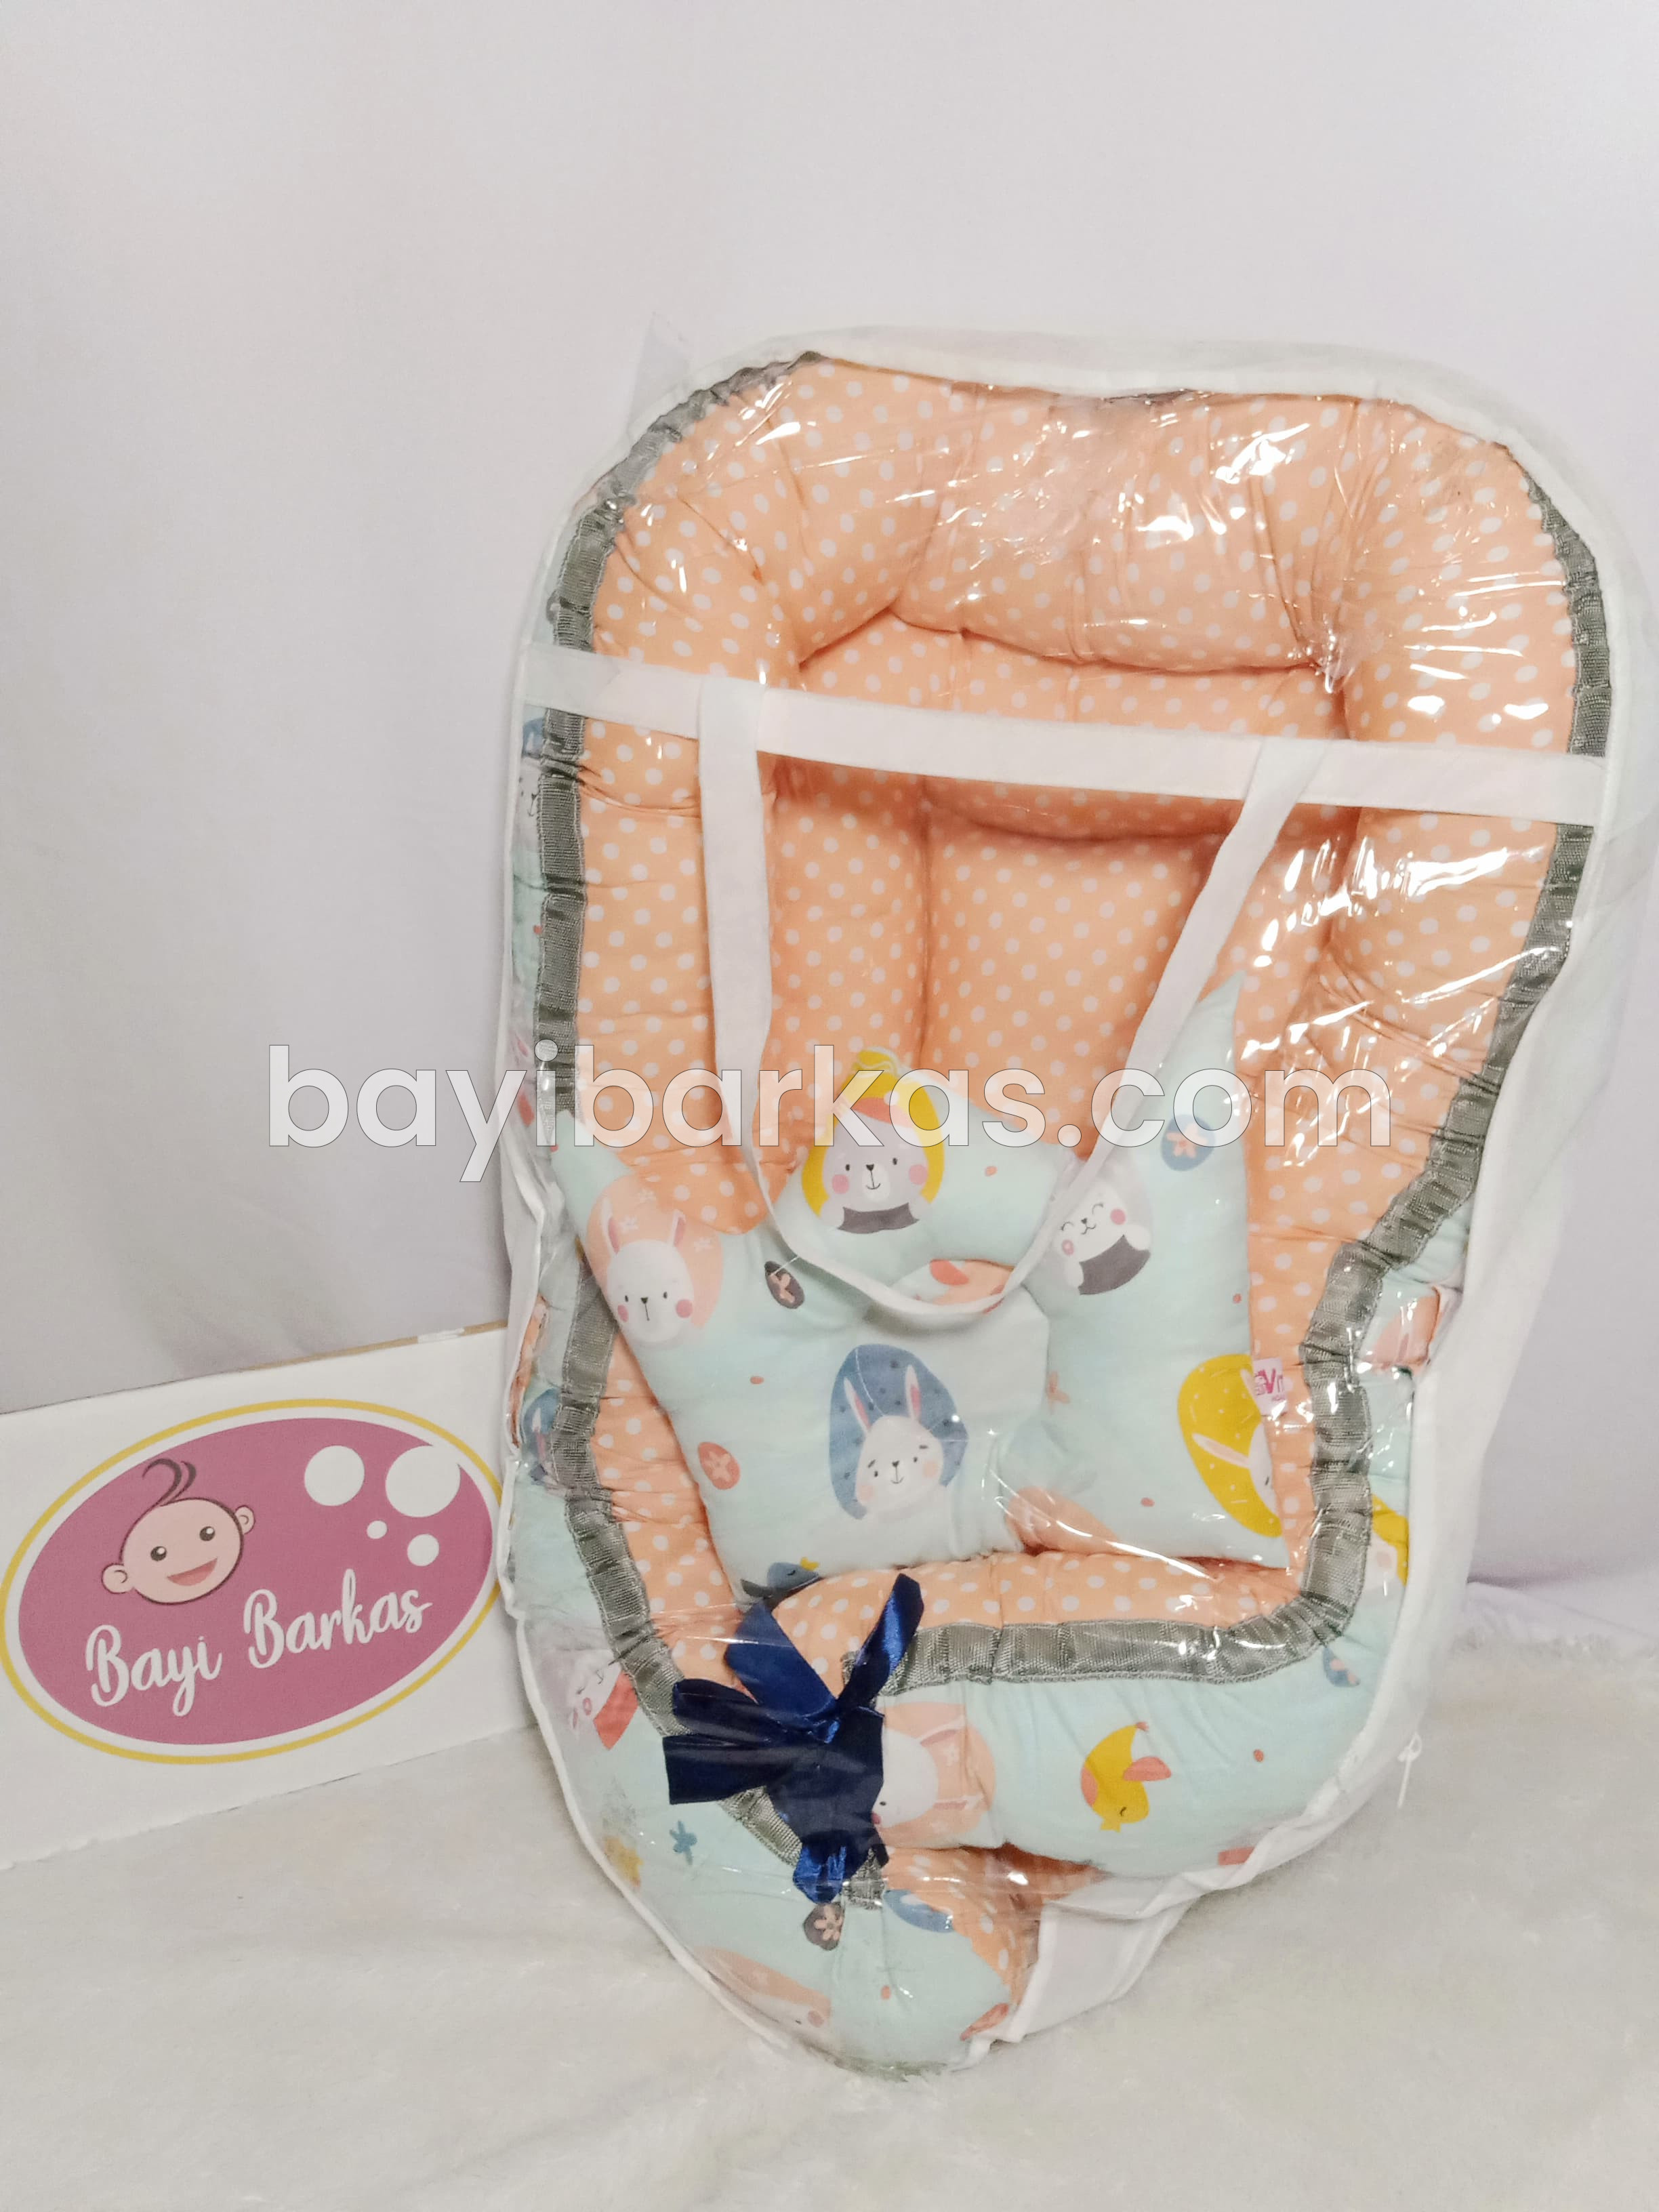 Baby Nest / kasur kapal bayi VITORIO Orange motif *EX-KADO